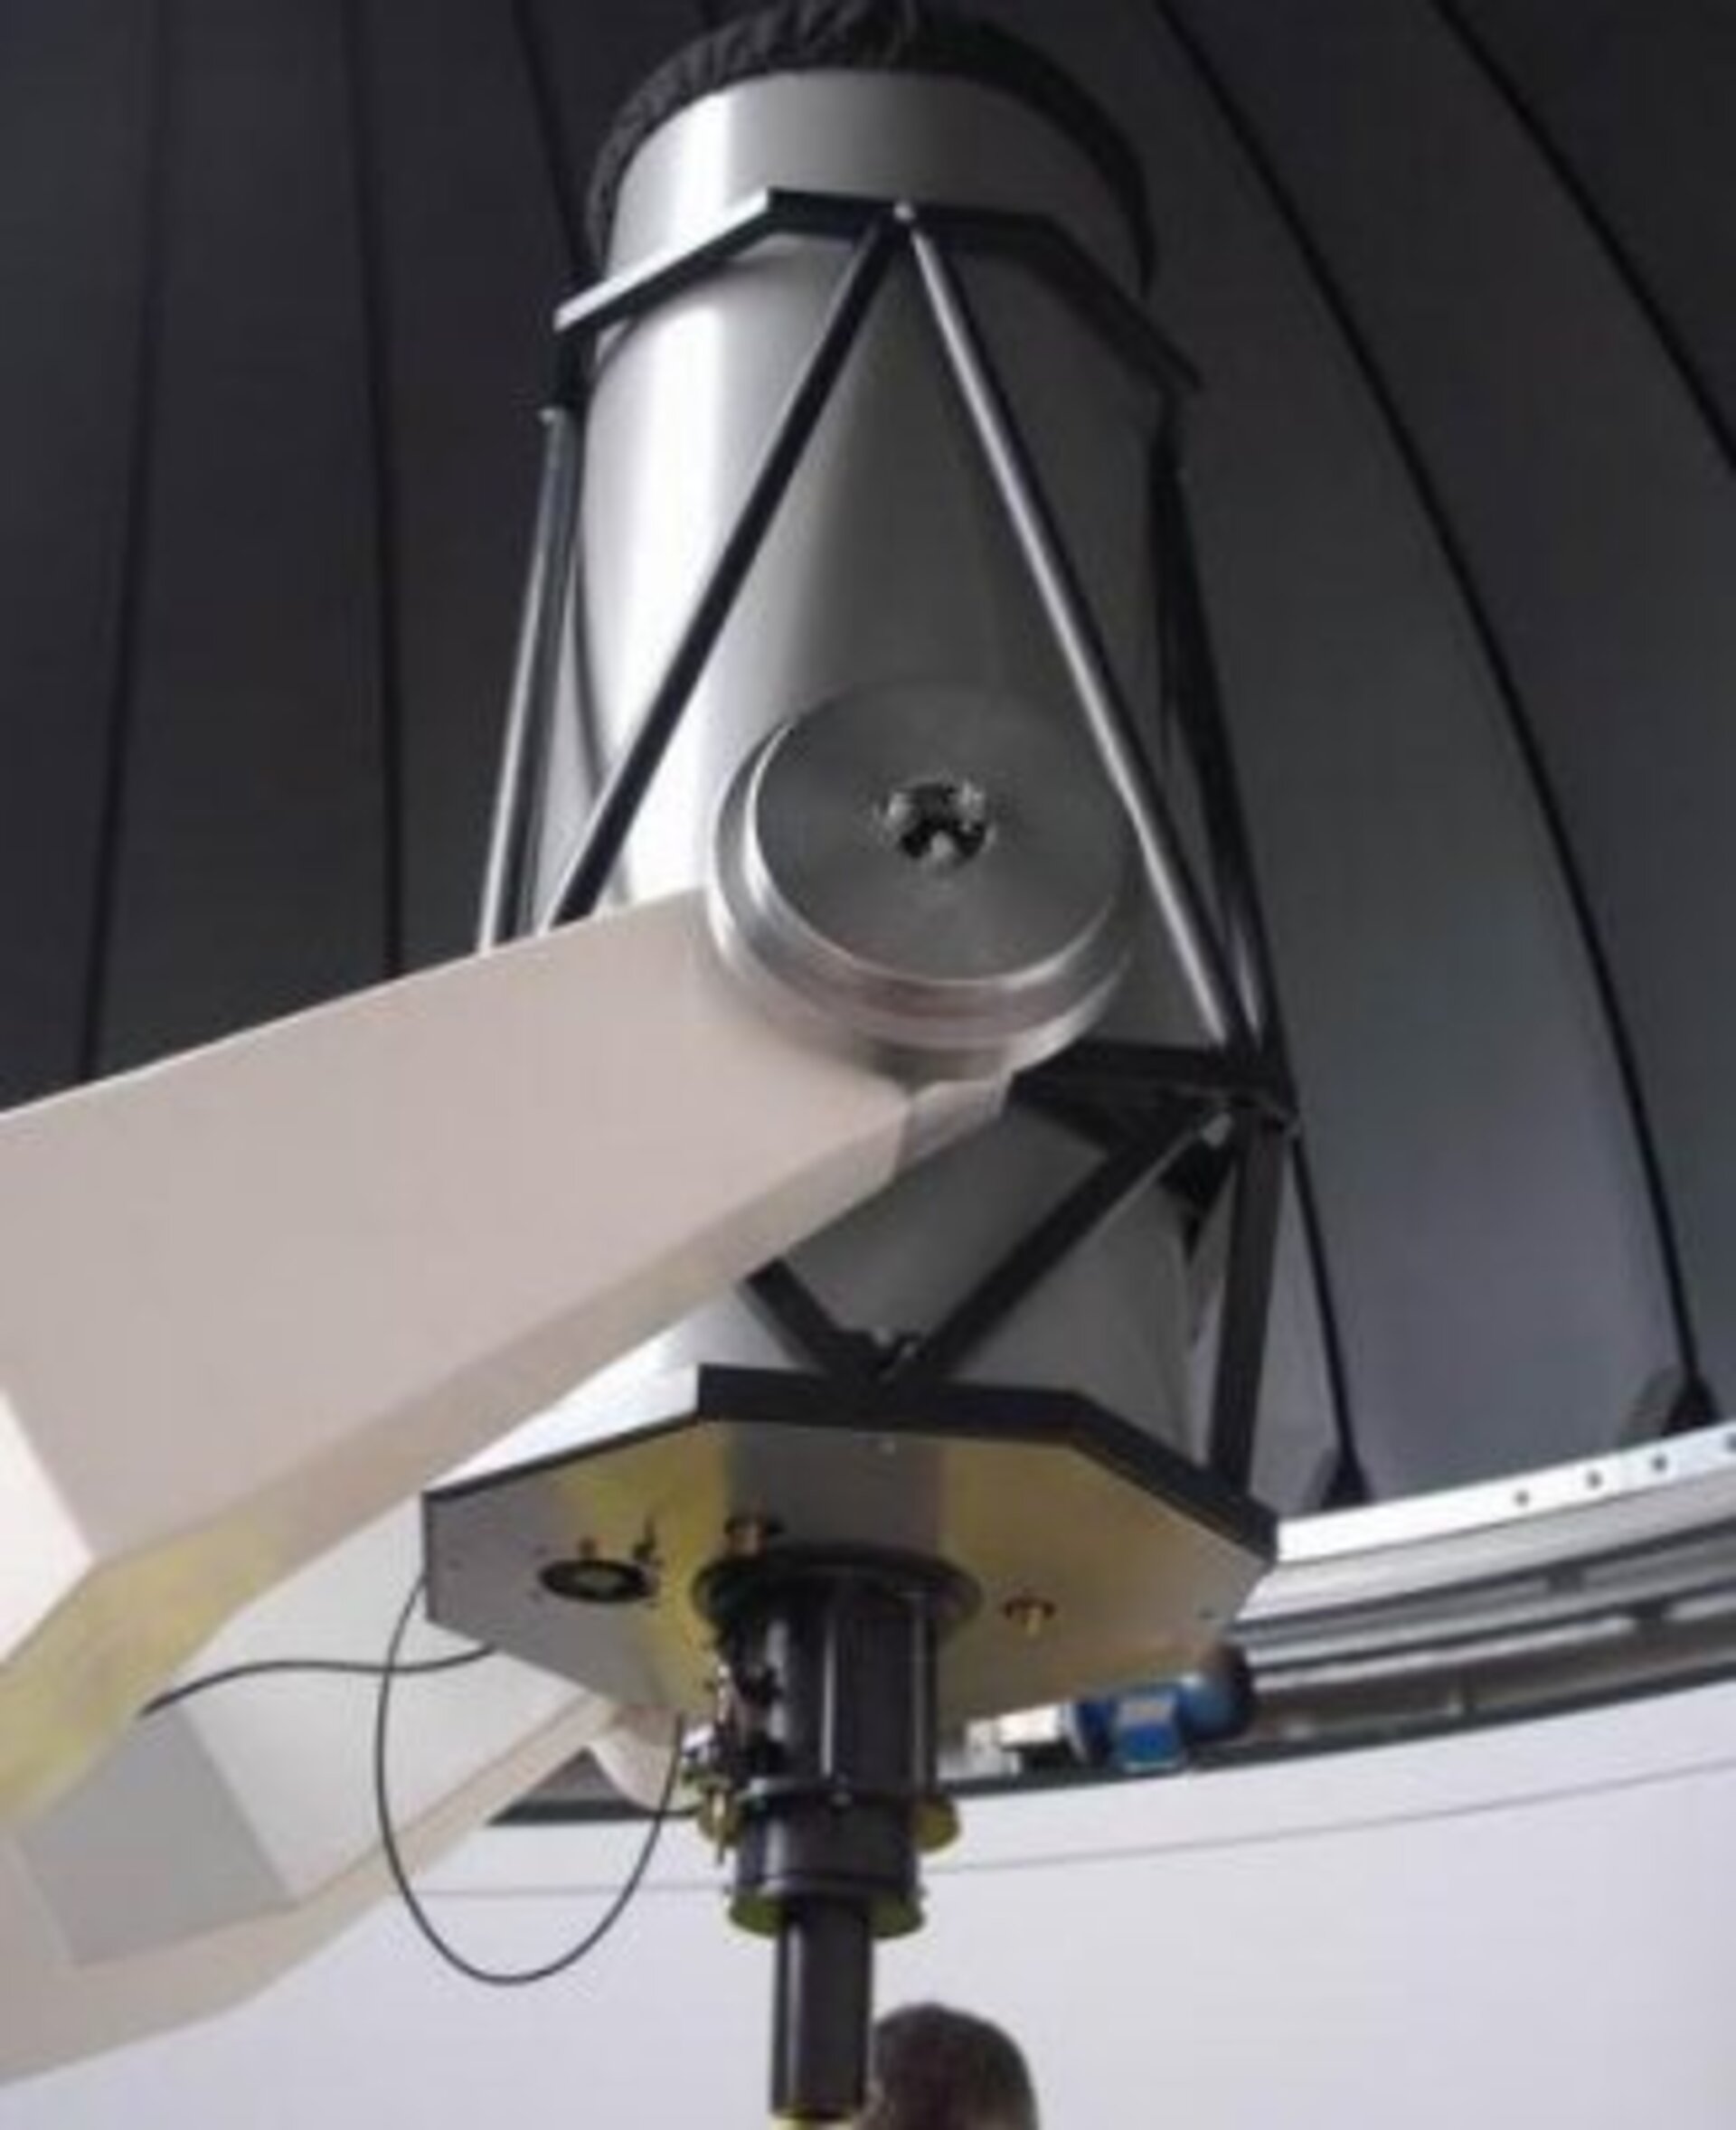 The new Cassegrain telescope at Urania